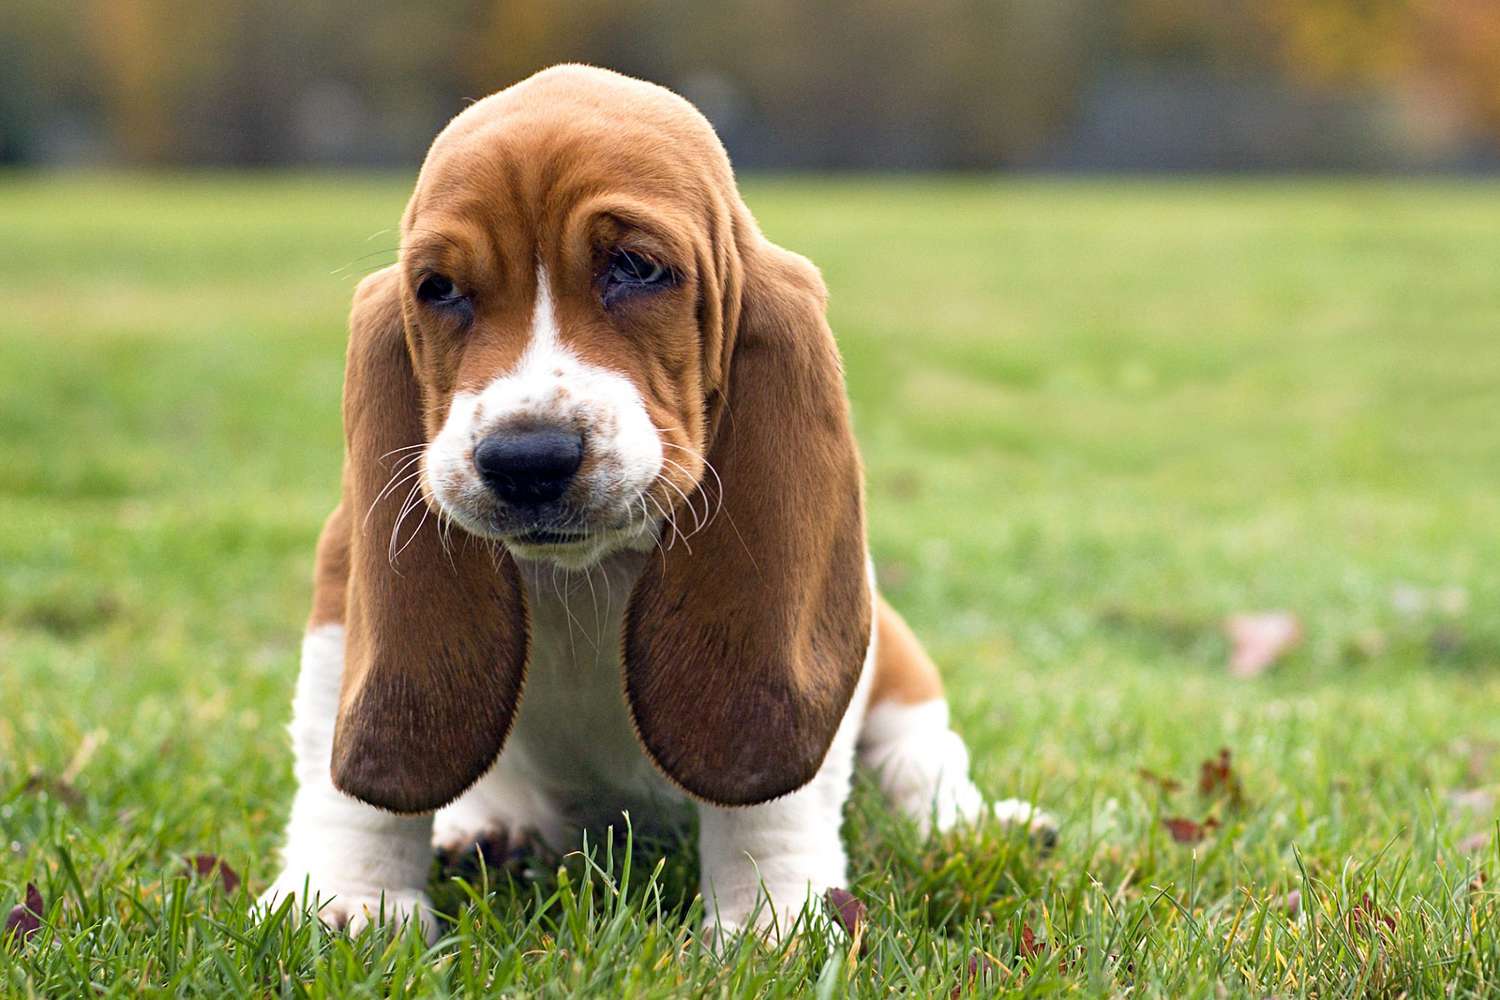 basset hound puppy sitting in the grass